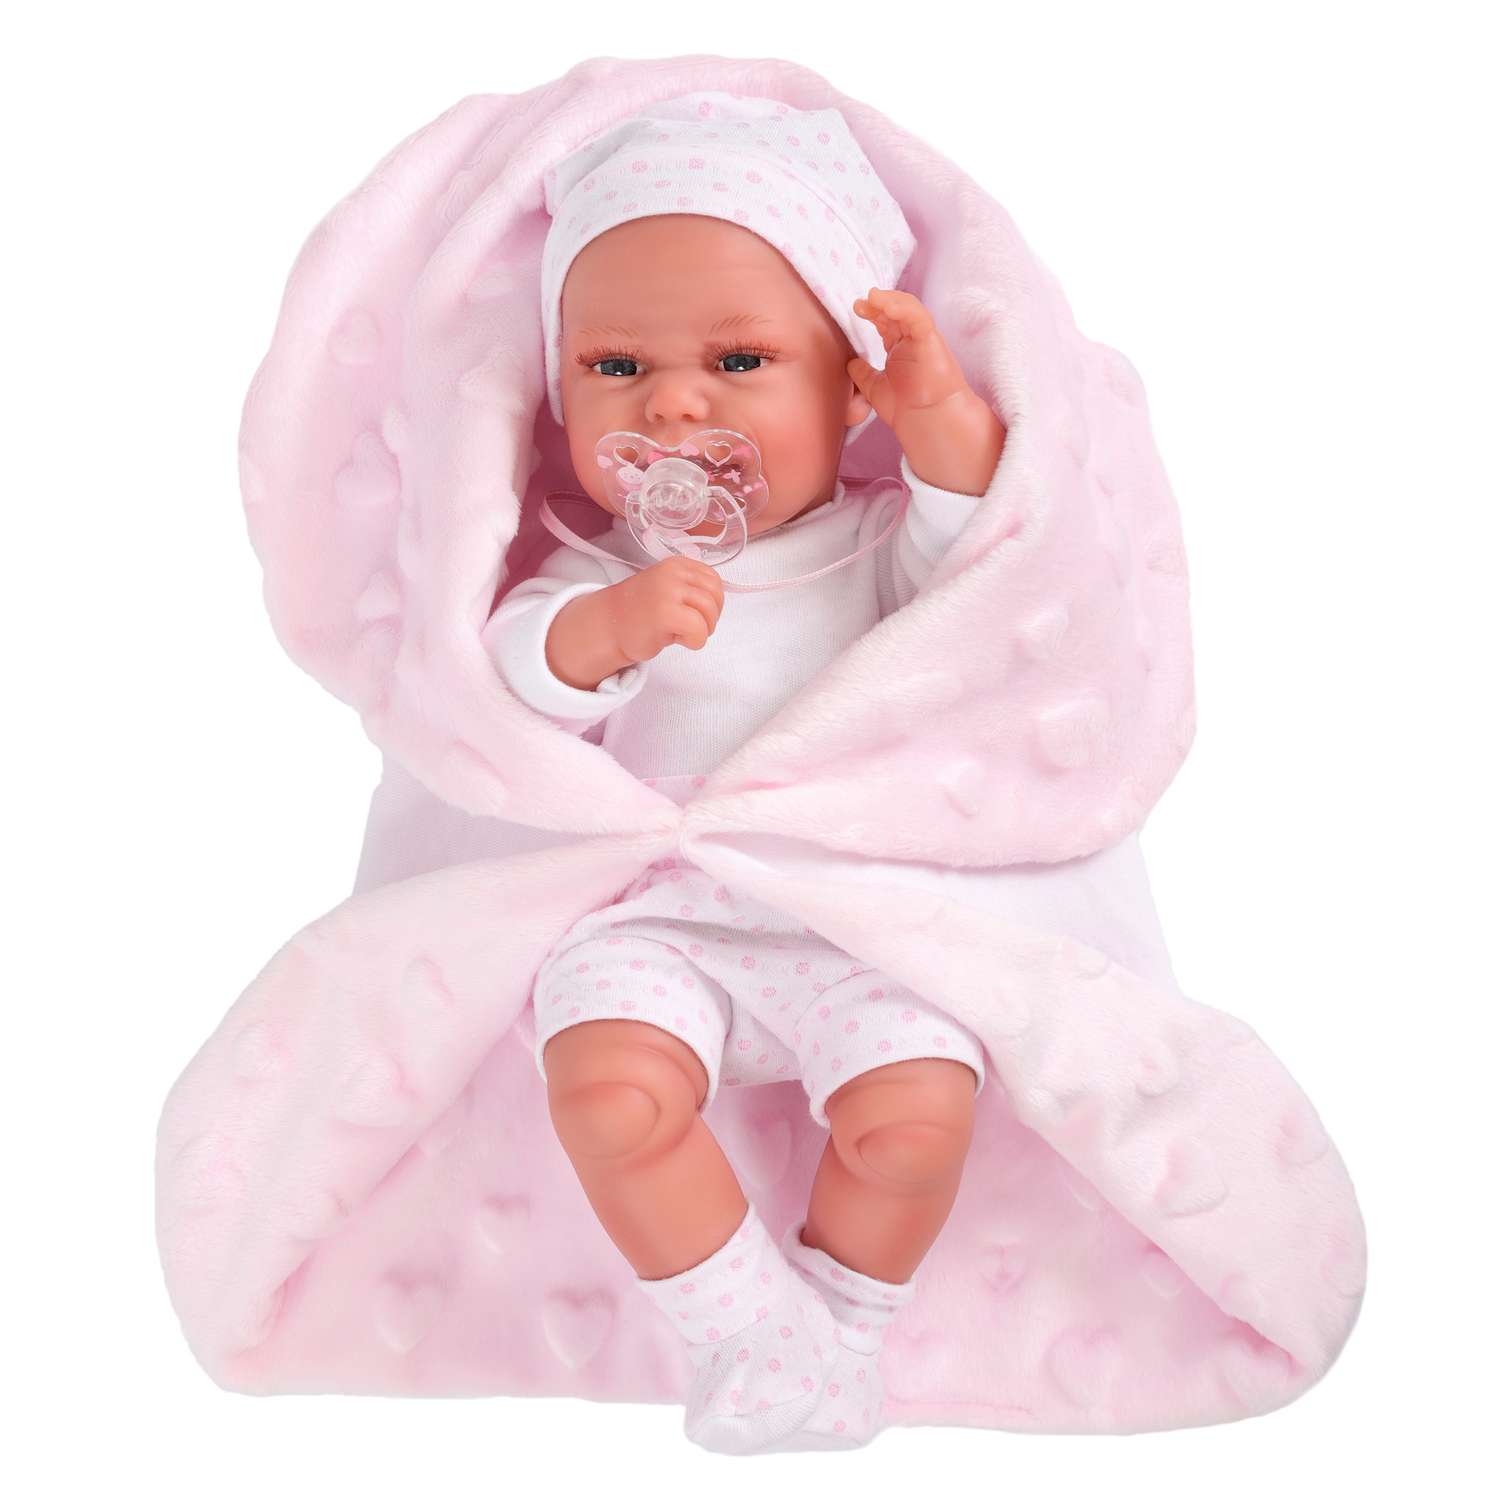 Кукла-пупс Antonio Juan Фатима на розовом одеяле 33 см виниловая 6026P - фото 1